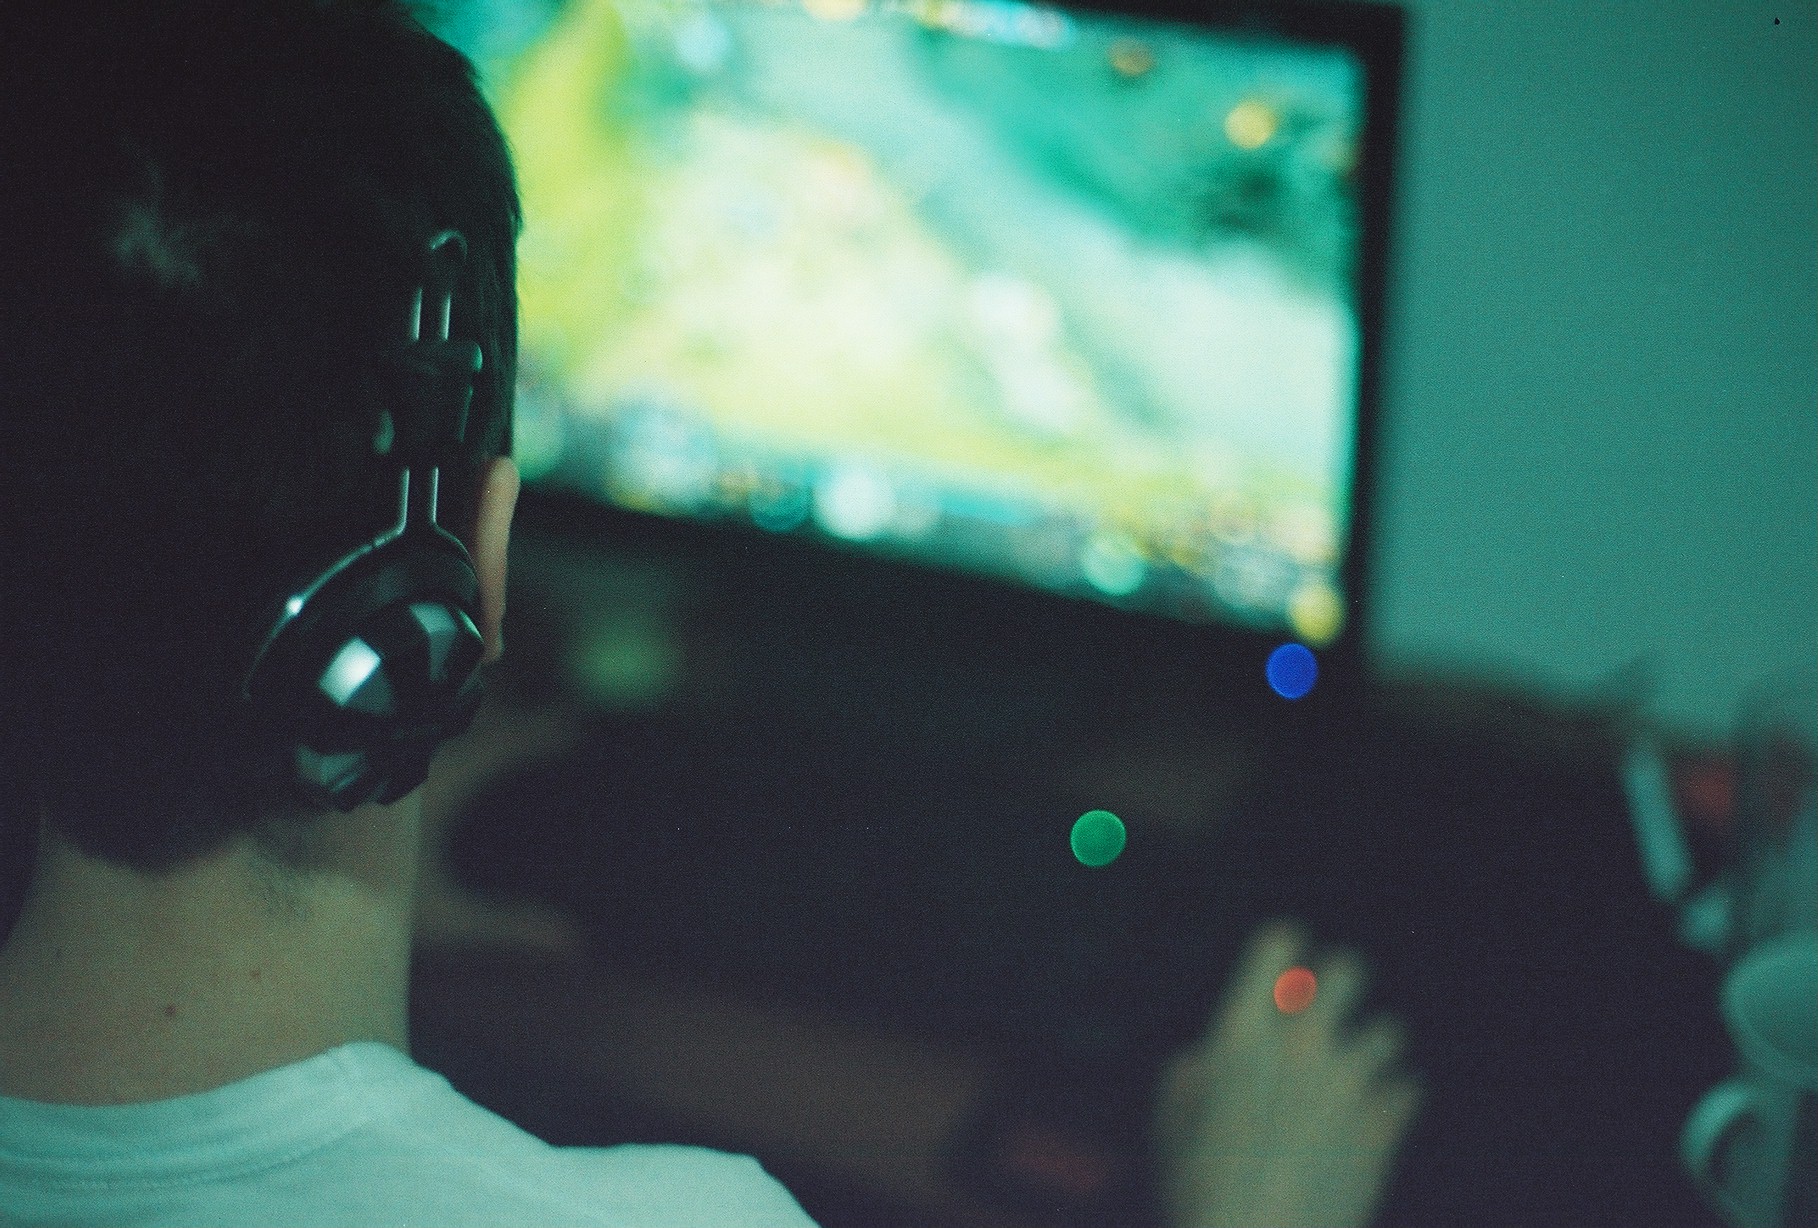 La UOC apuesta por los videojuegos como herramienta de aprendizaje.<br />Foto: Pawel Kadysz / Flickr (CC)